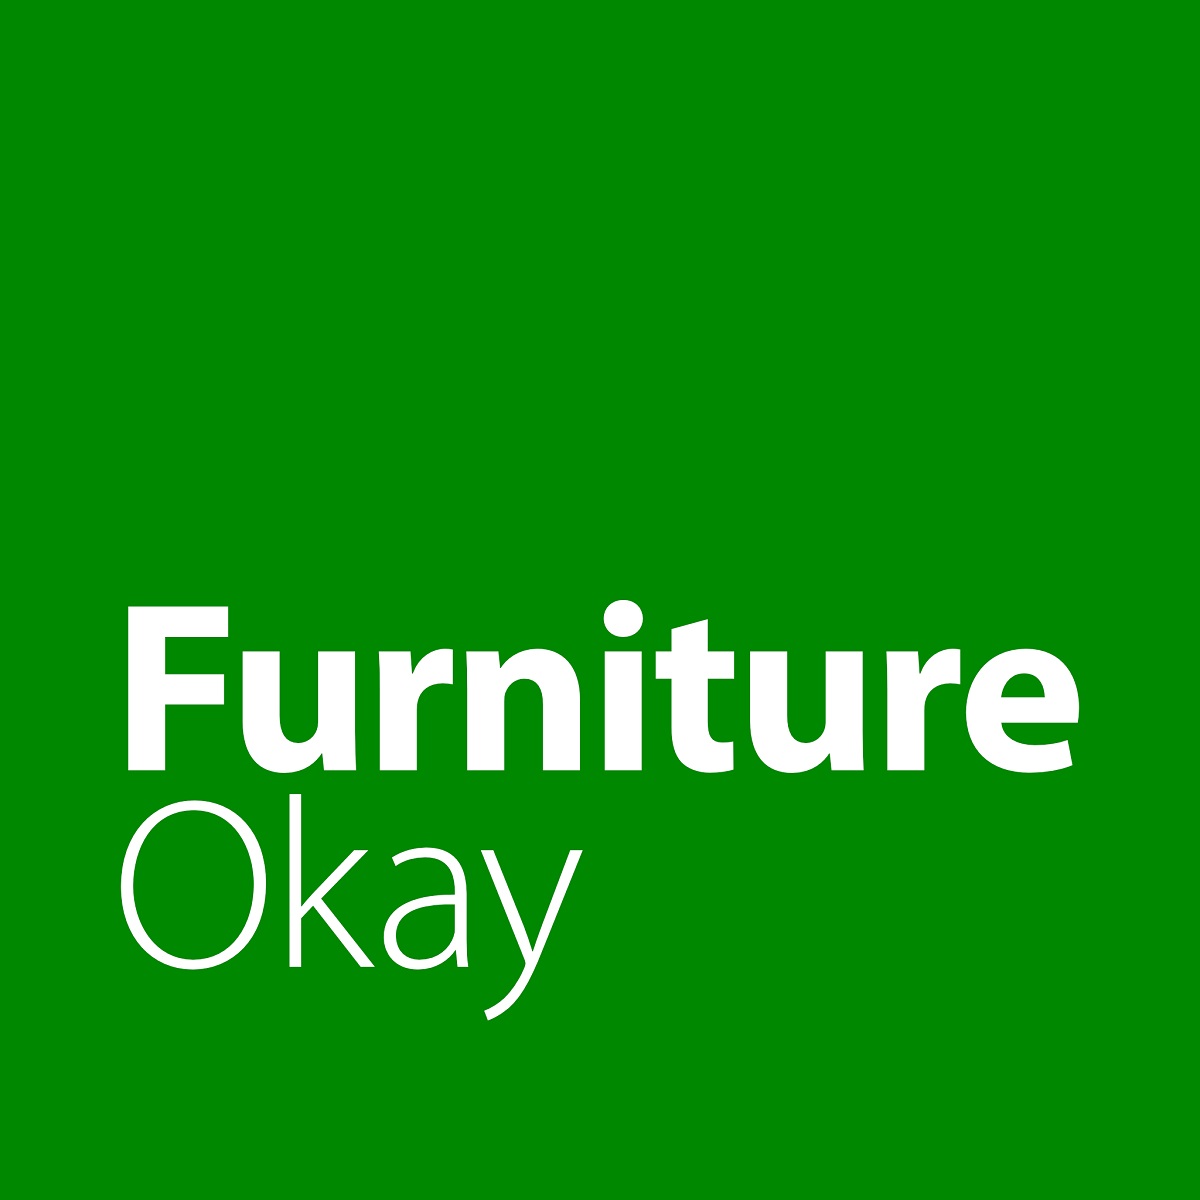 FurnitureOkay